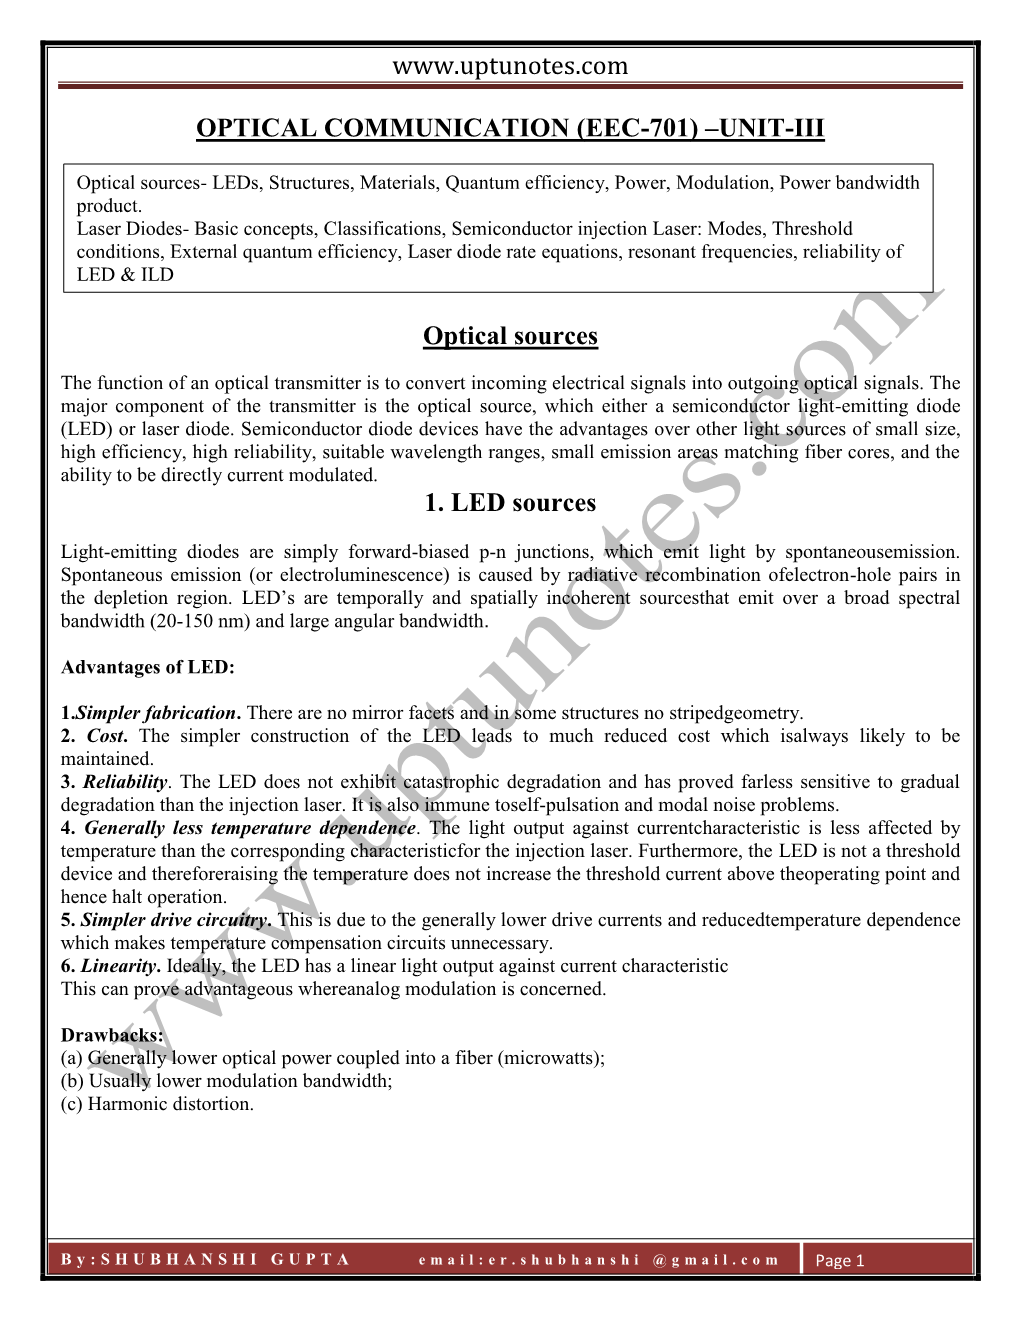 Optical Communication (Eec-701) –Unit-Iii